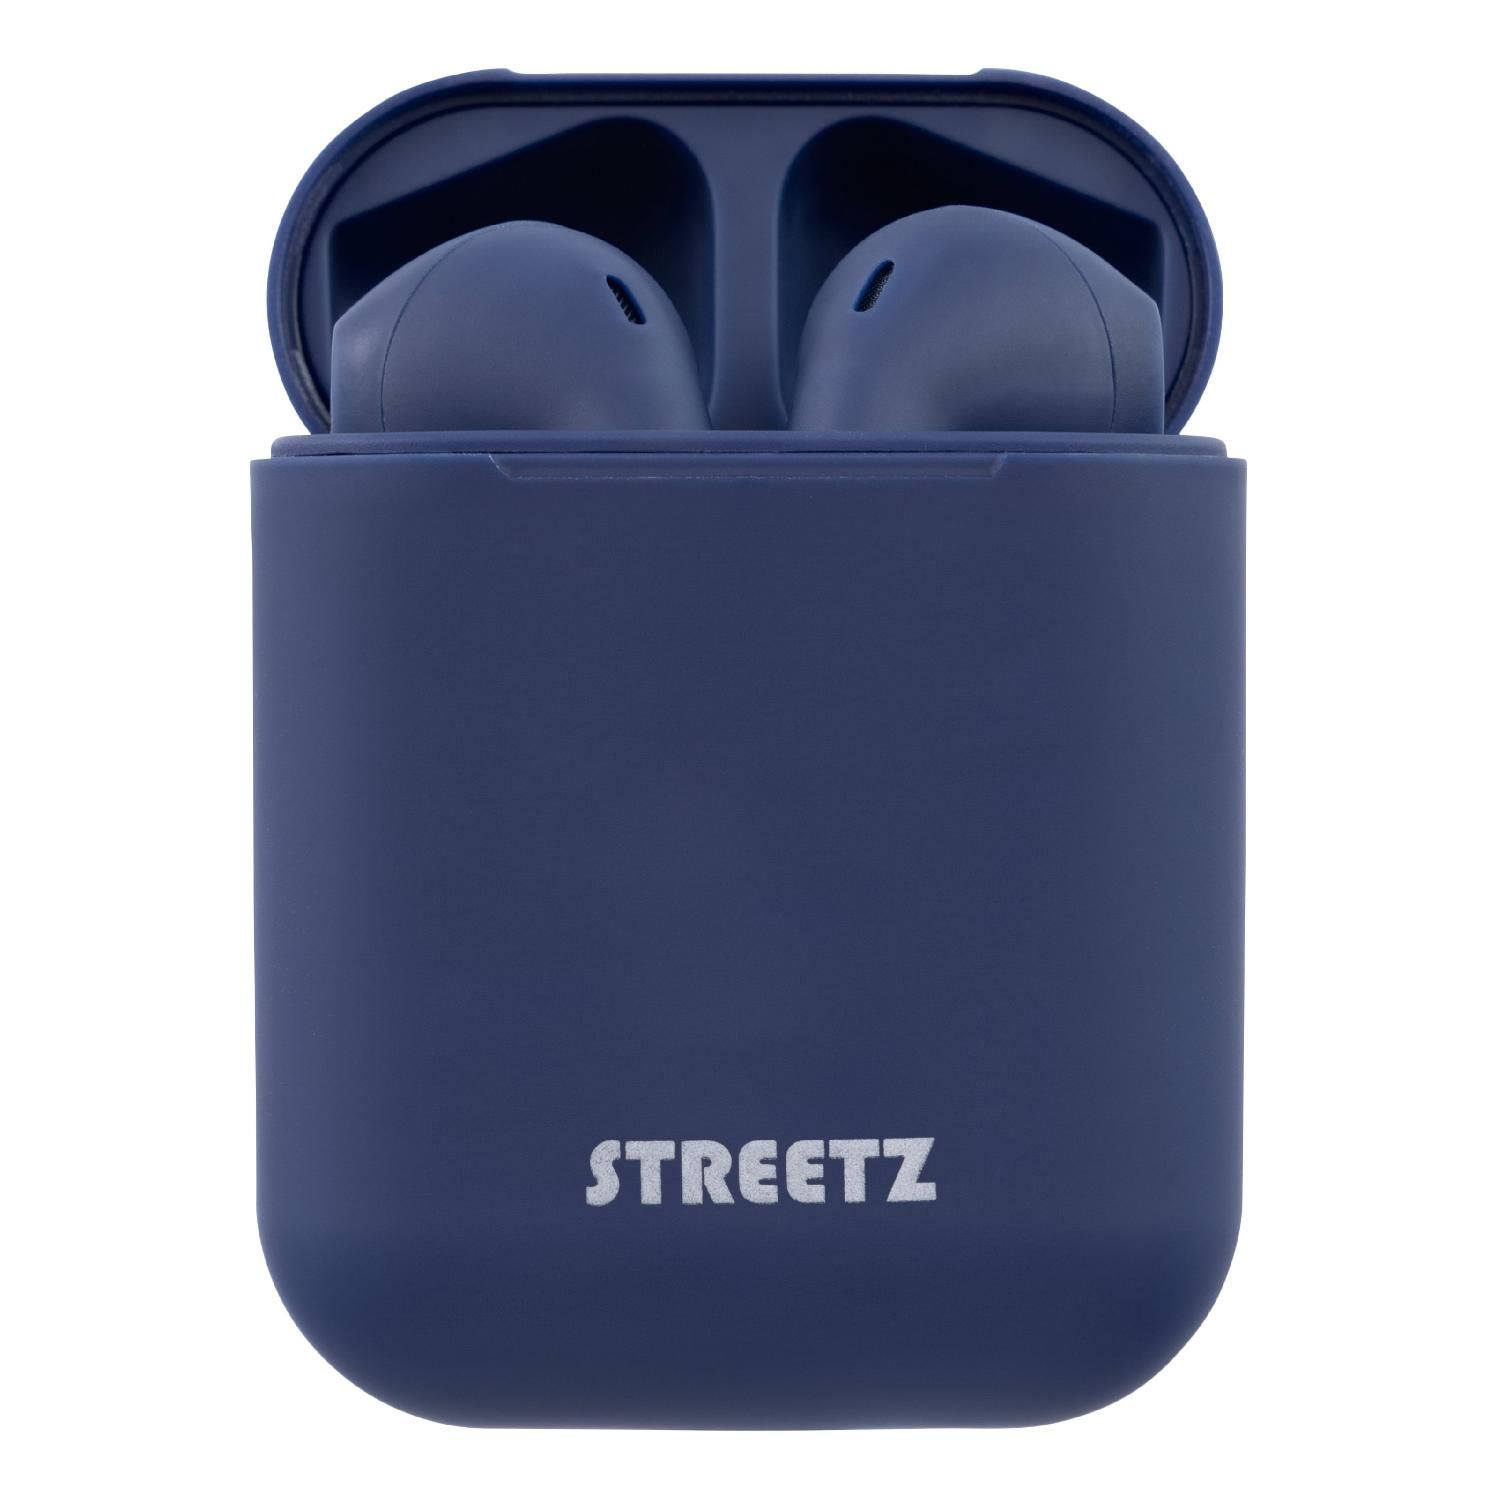 STREETZ TWS In-Ear Kopfhörer, blau Kopfhörer Bluetooth In-ear